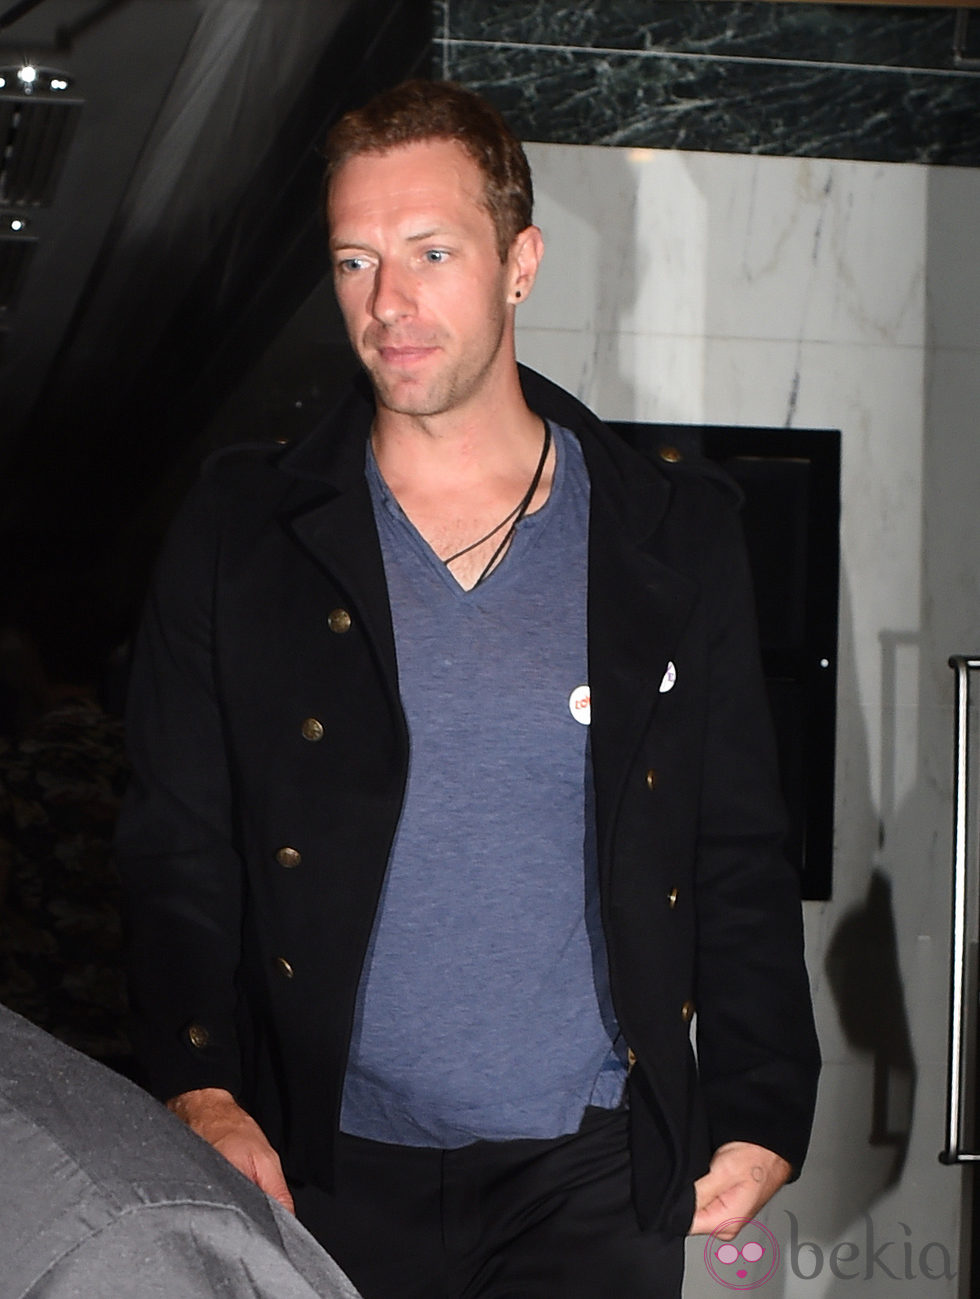 Chris Martin, vocalista de Coldplay, tras su concierto en Londres